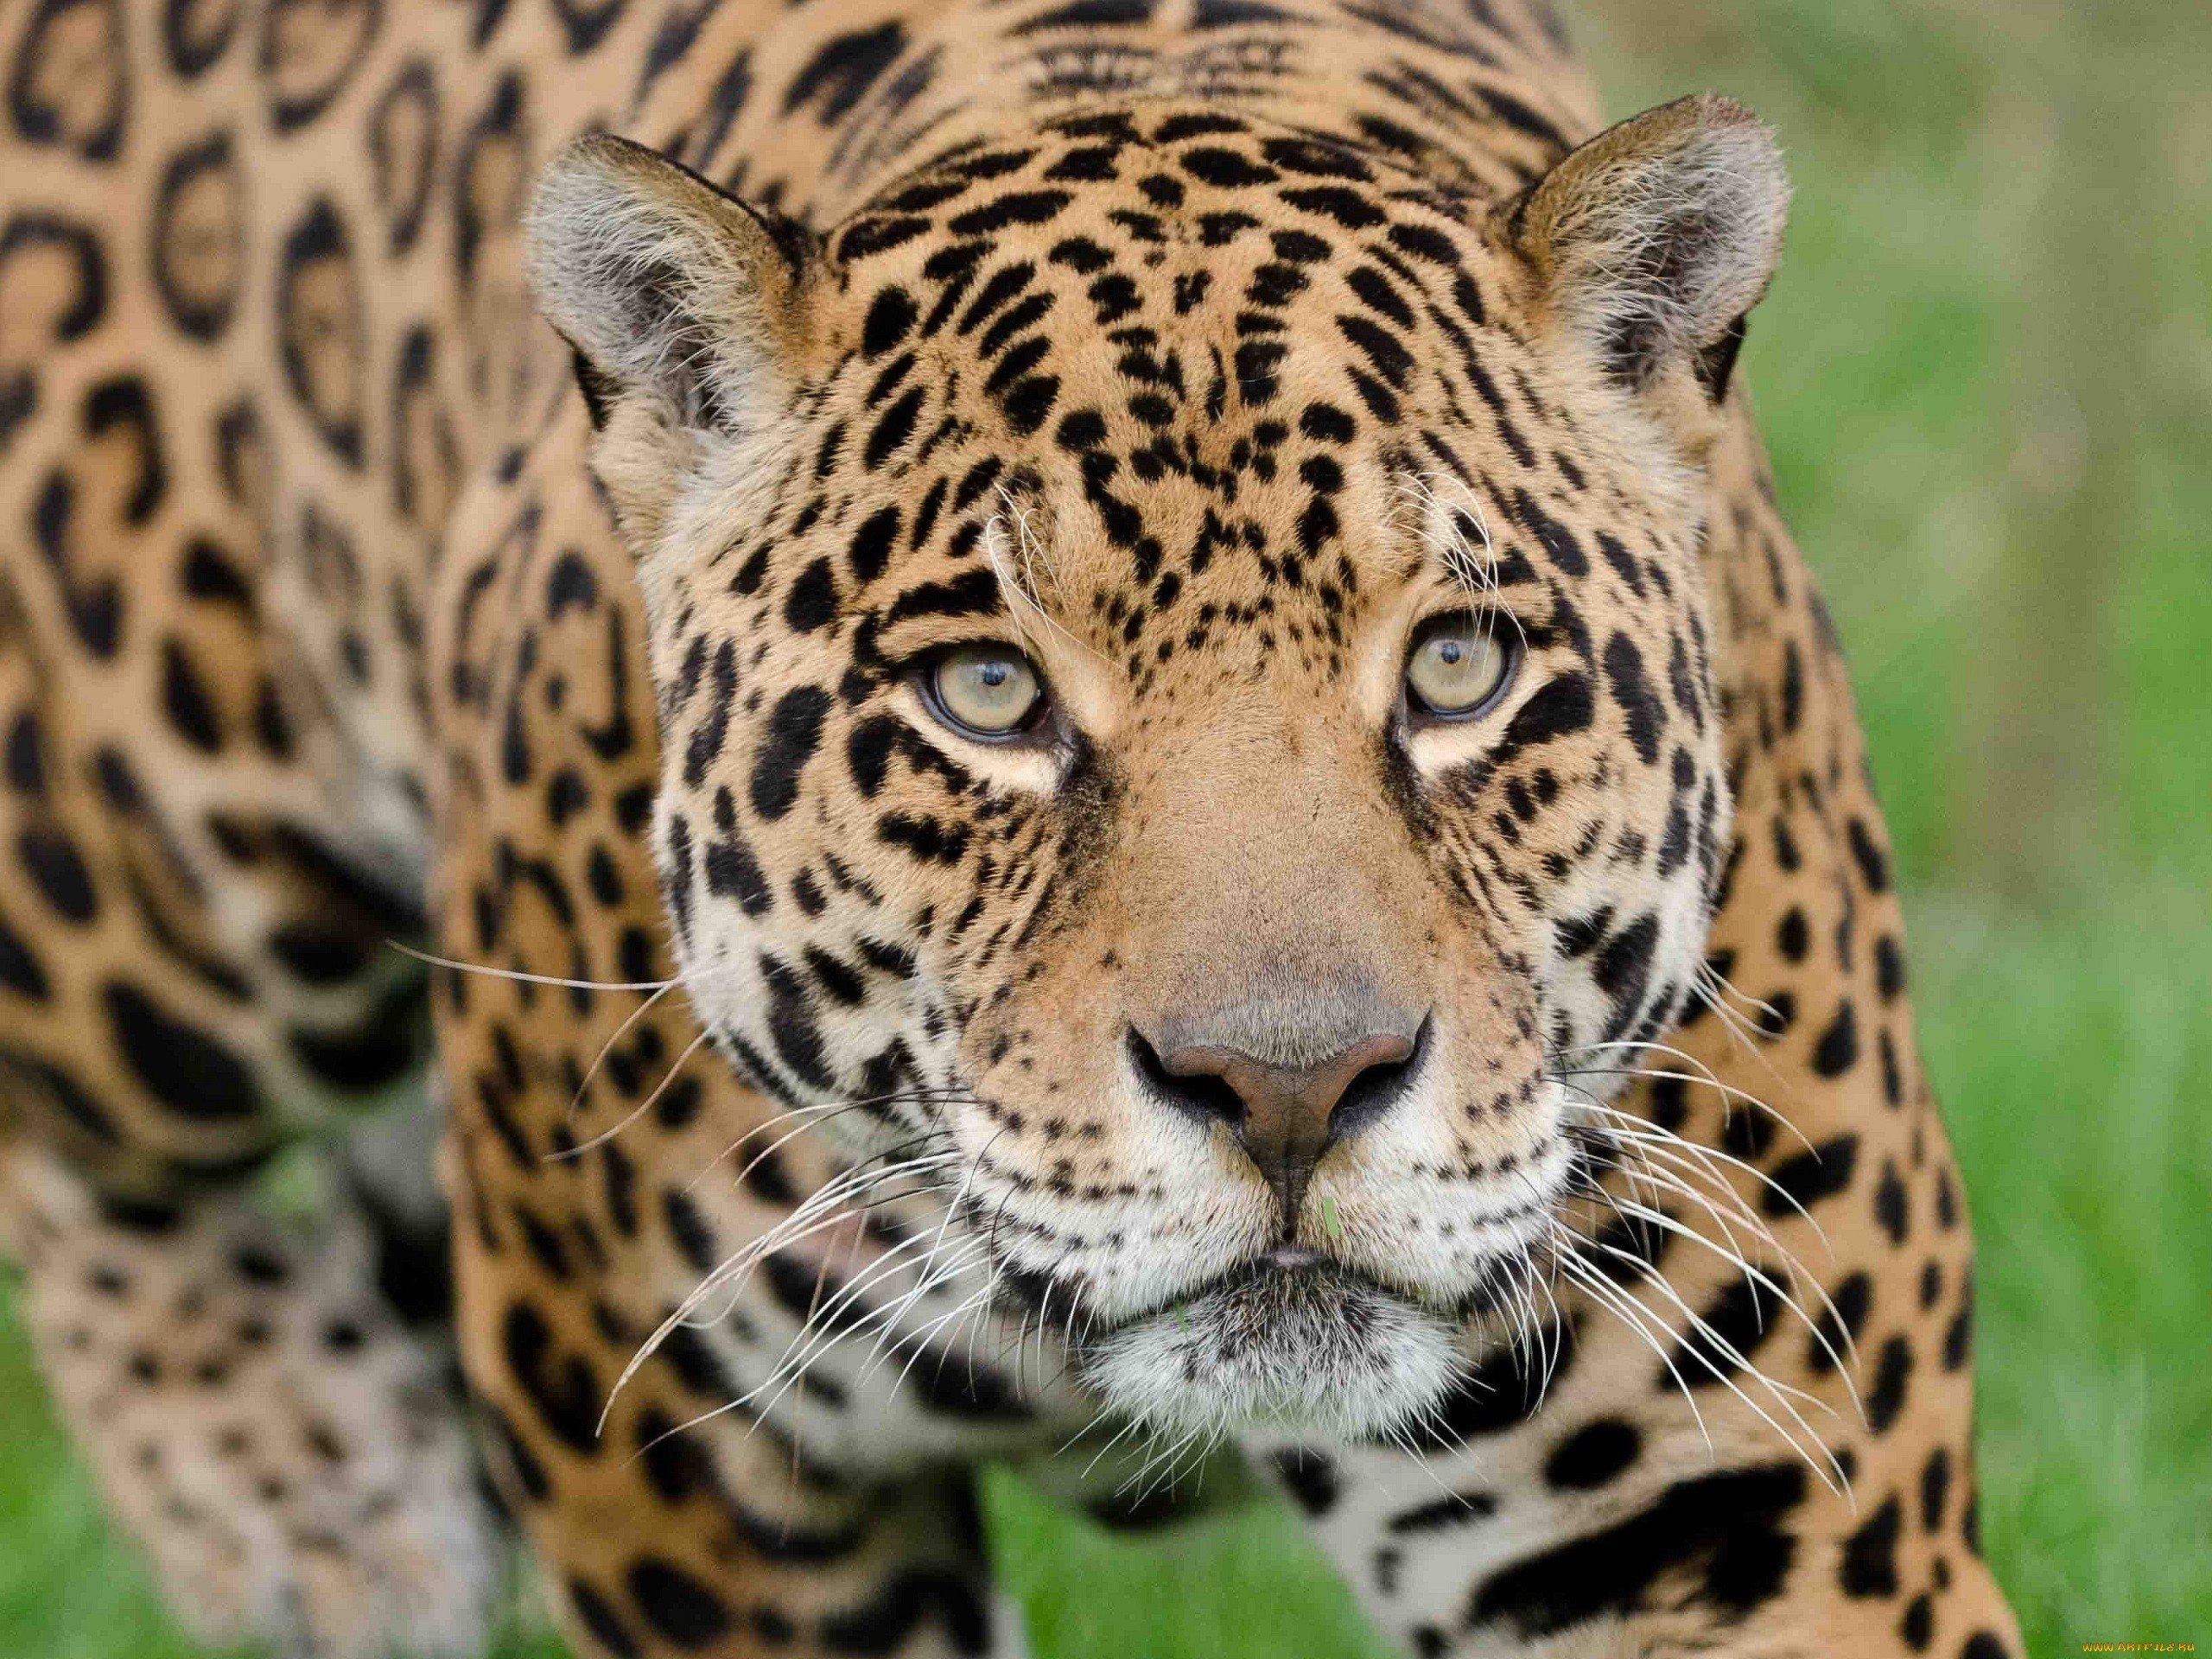 dangerous, 4k animal images, grass,closeup, jaguar, wild animals ...